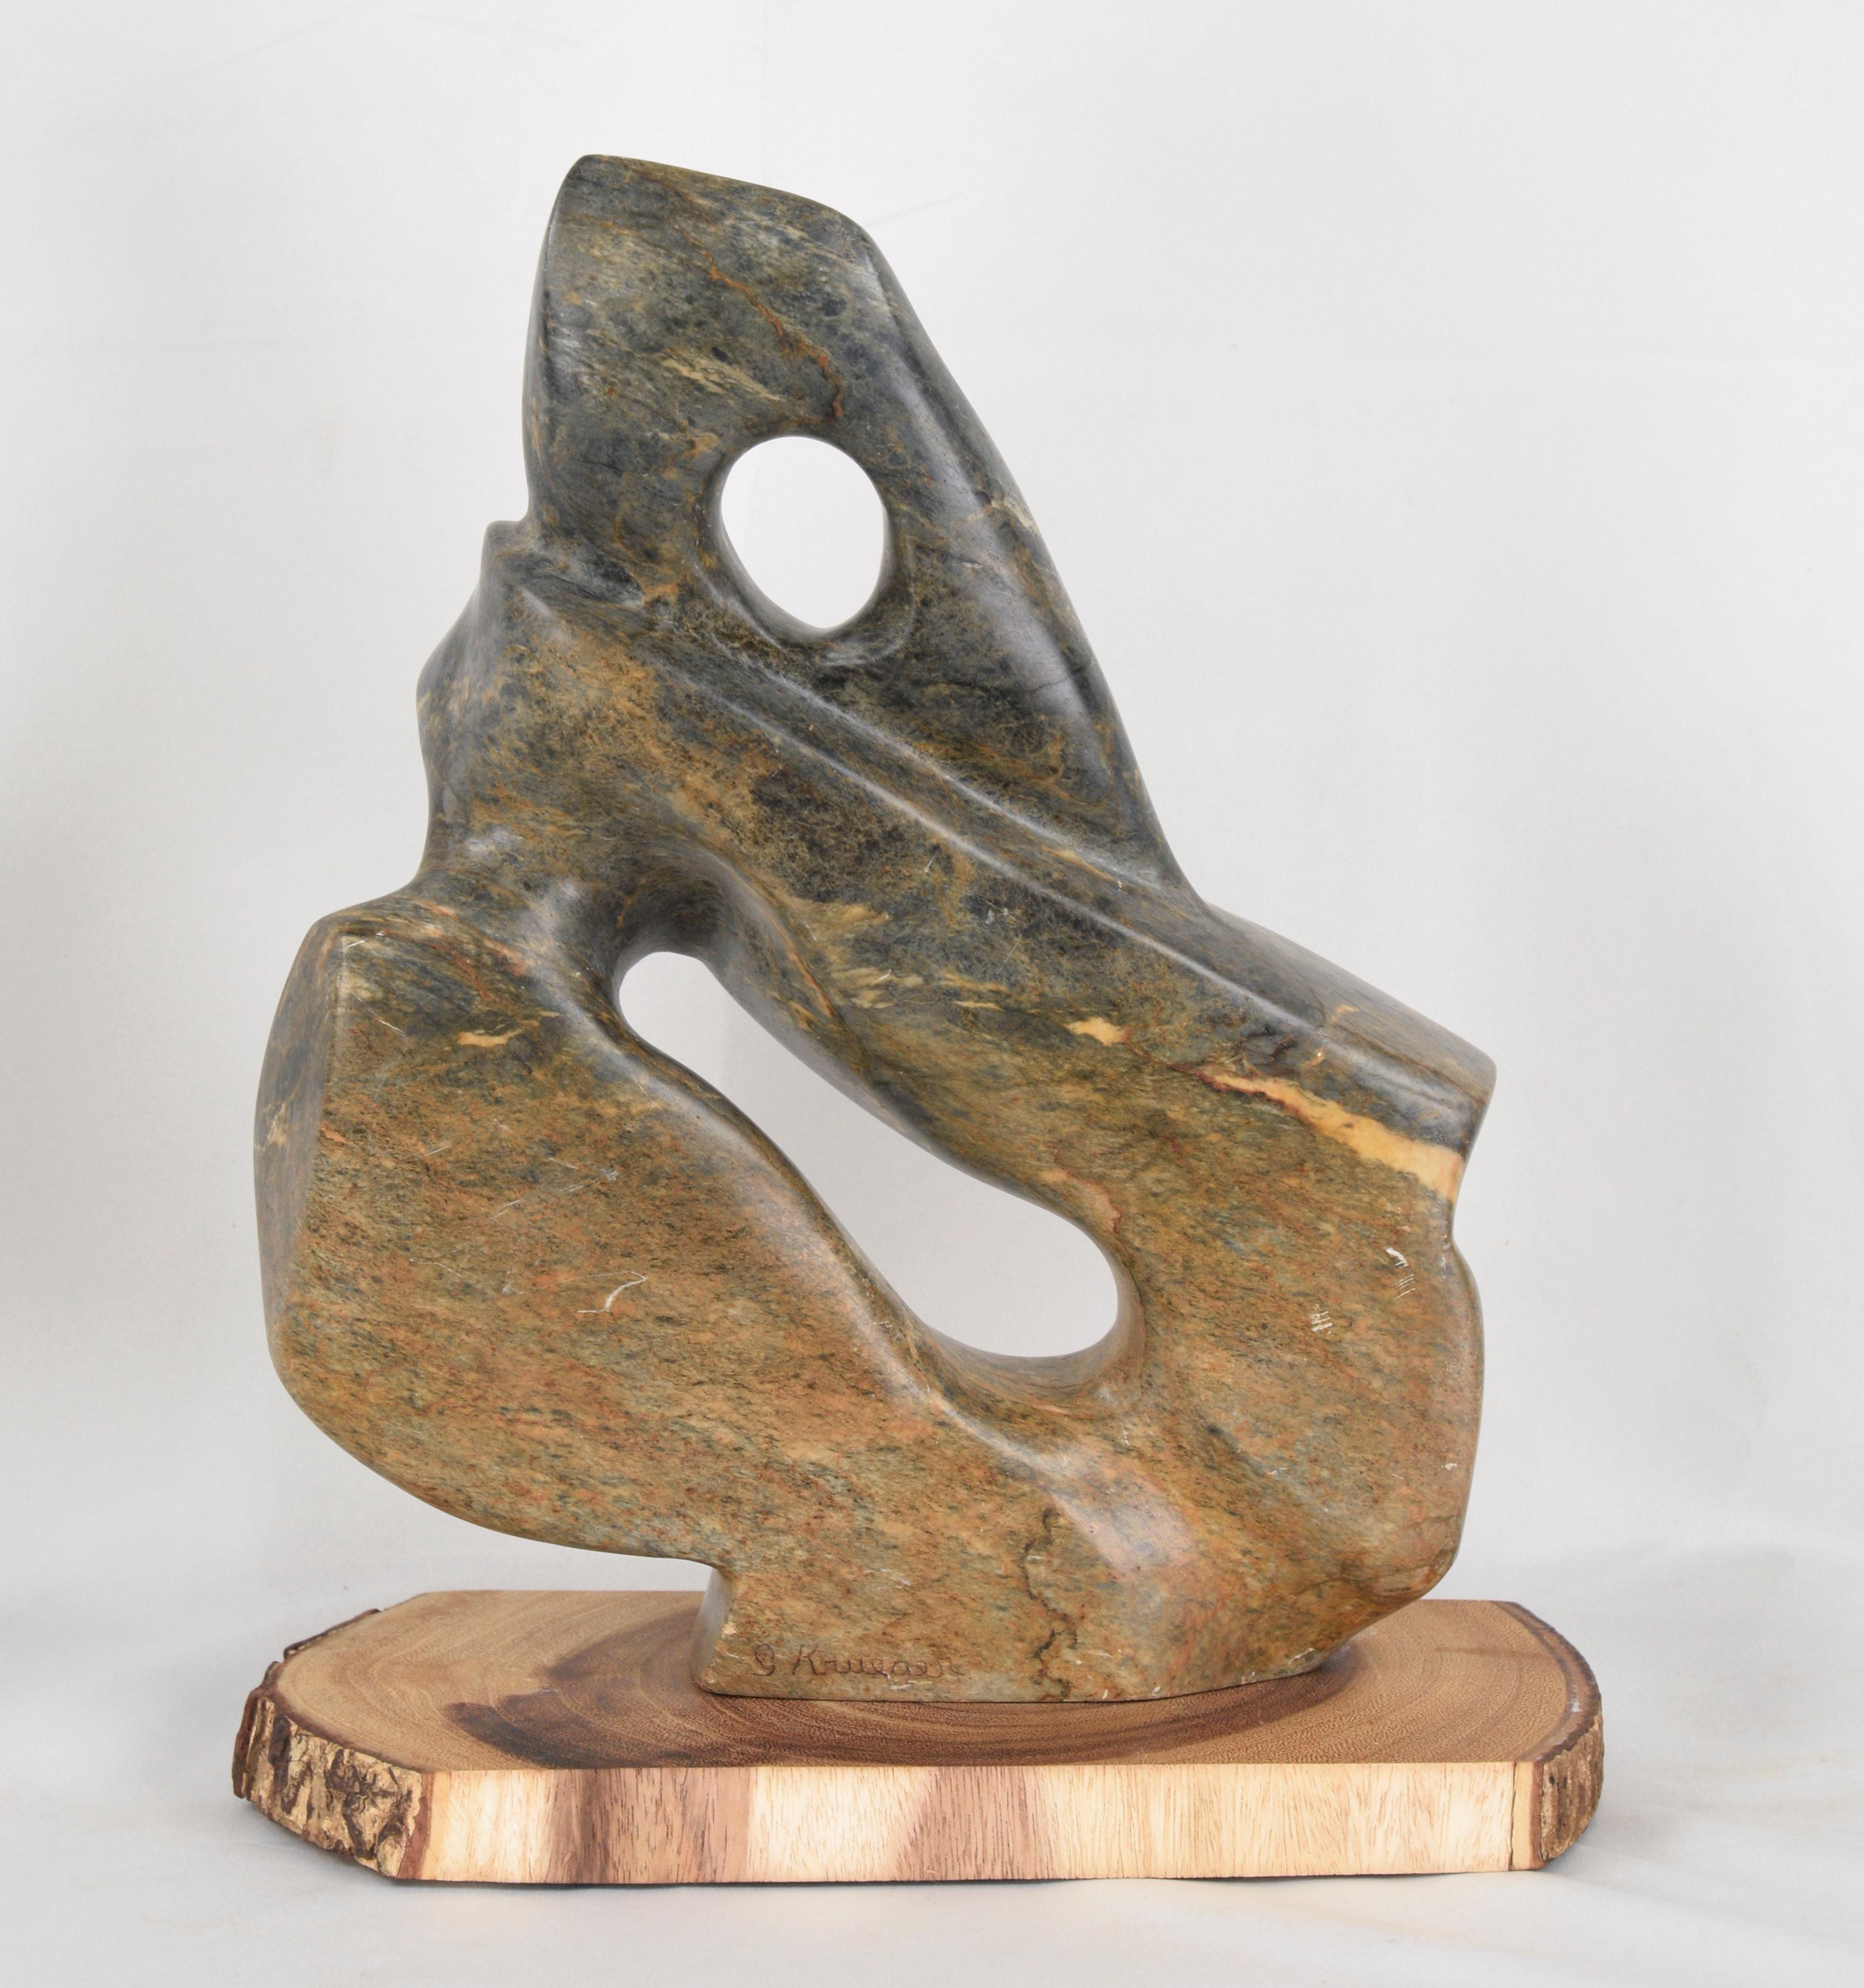 G Krueger Abstract Sculpture - Abstract Serpentine Stone Sculpture by G. Krueger